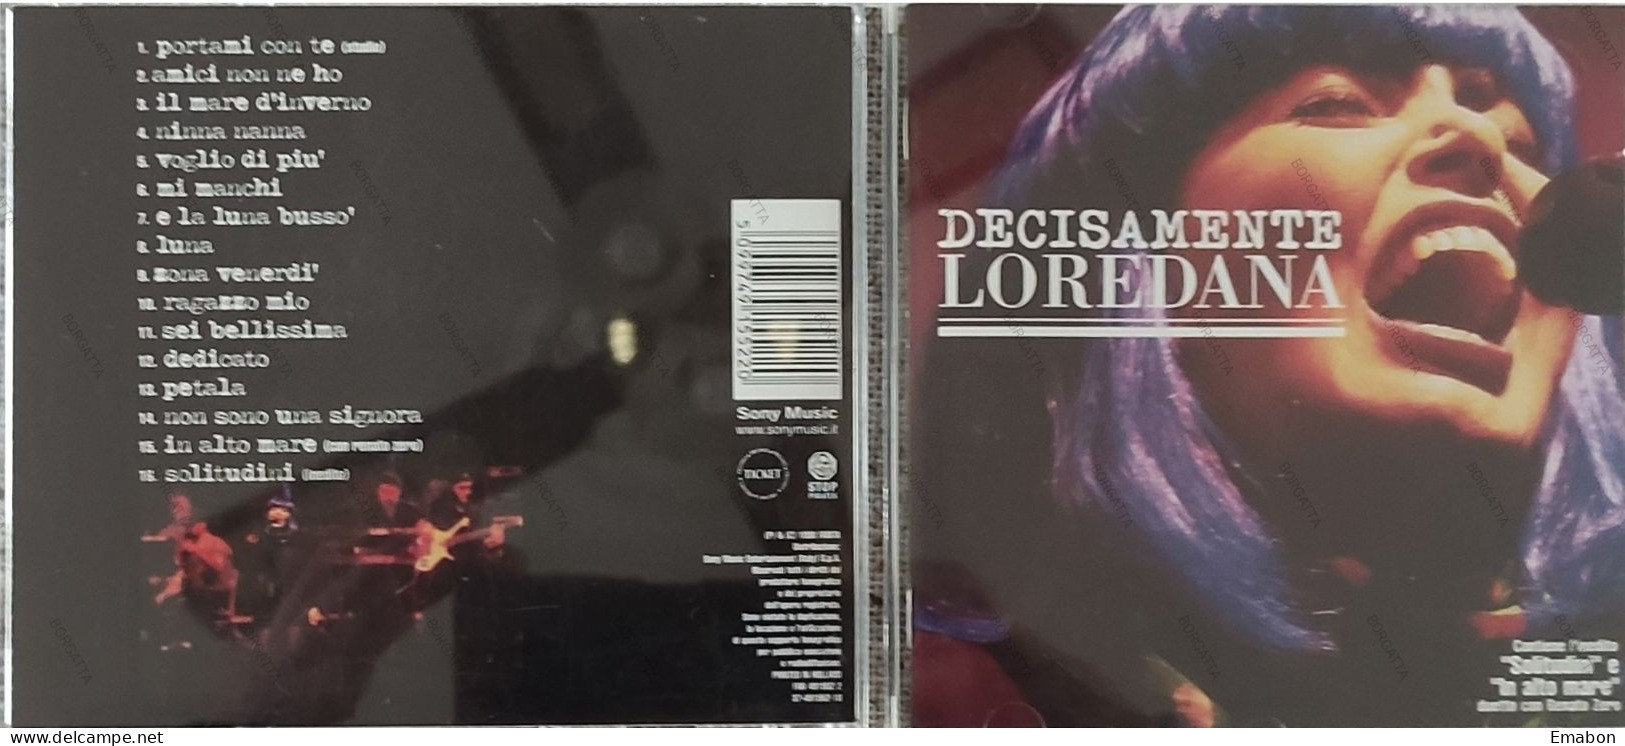 BORGATTA - ITALIANA  - Cd  LOREDANA BERTE' - DECISAMENTE LOREDANA - FARITA 1998 -  USATO In Buono Stato - Other - Italian Music